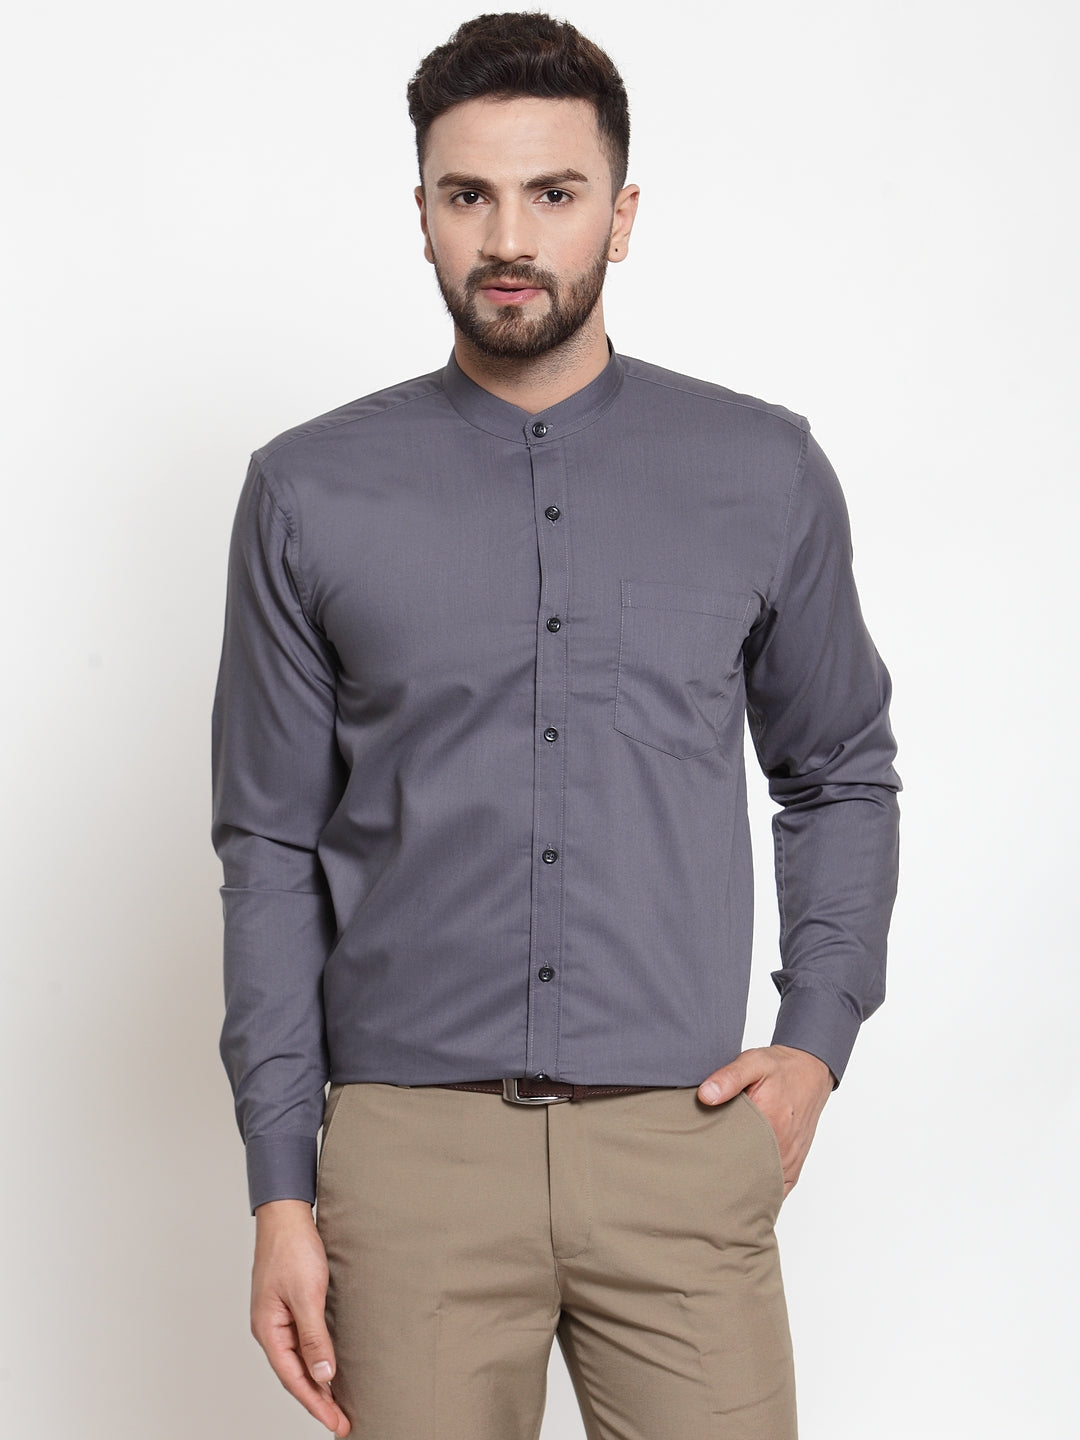 Men's Grey Cotton Solid Mandarin Collar Formal Shirts ( SF 726Grey ) - Jainish